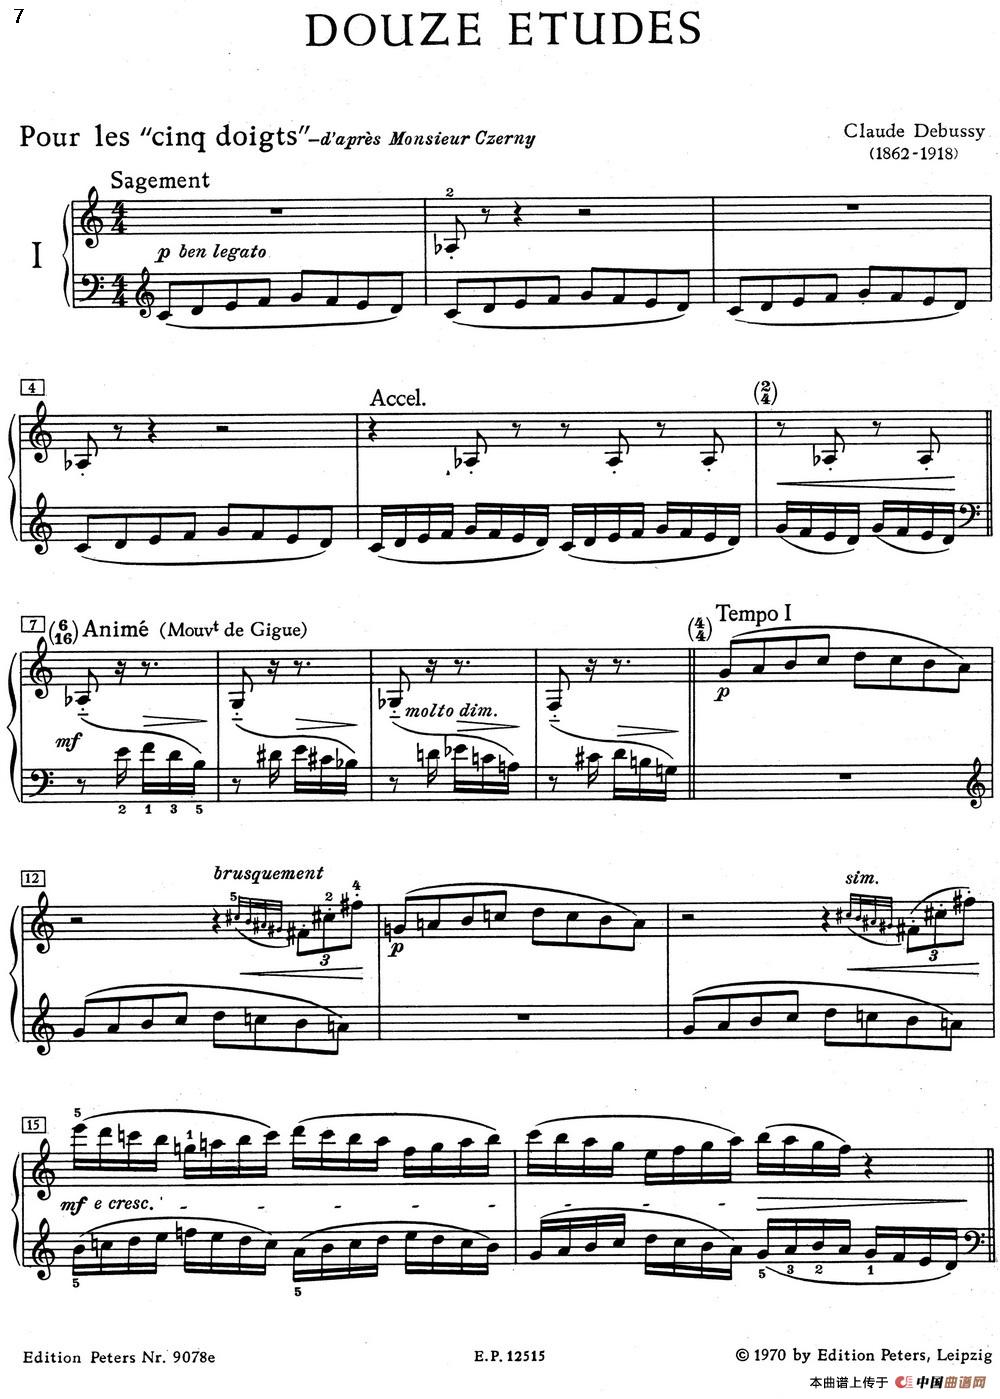 德彪西12首钢琴练习曲（1 五指练习v1.0 cinq doigts）(1)_1 Pour les cinq doigts_页面_1.jpg